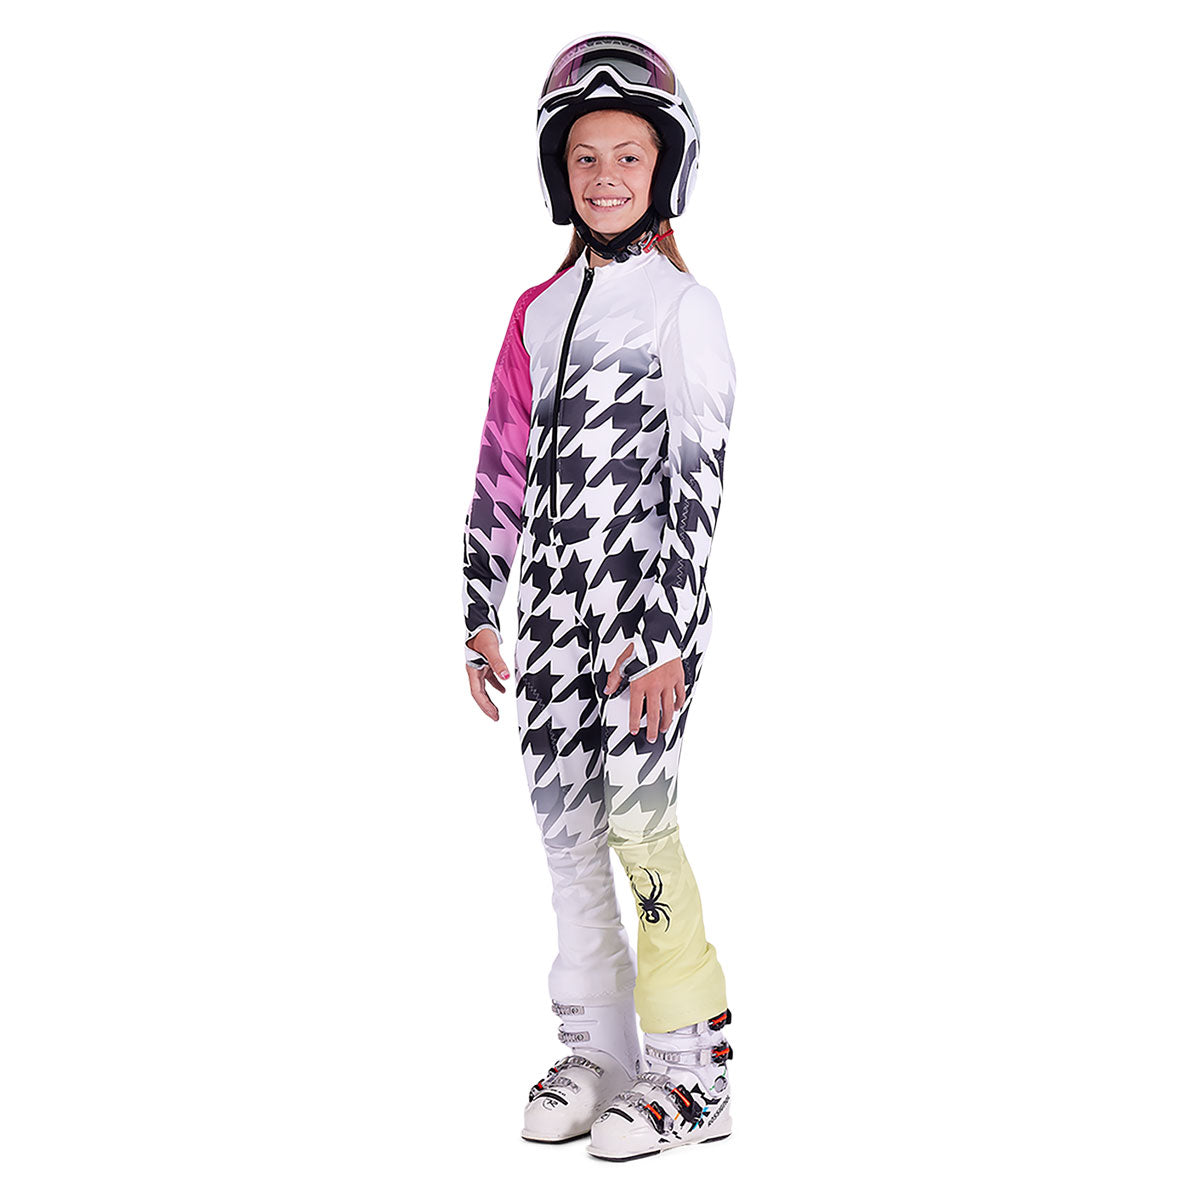 Spyder Girl's Performance GS Suit – Race Place